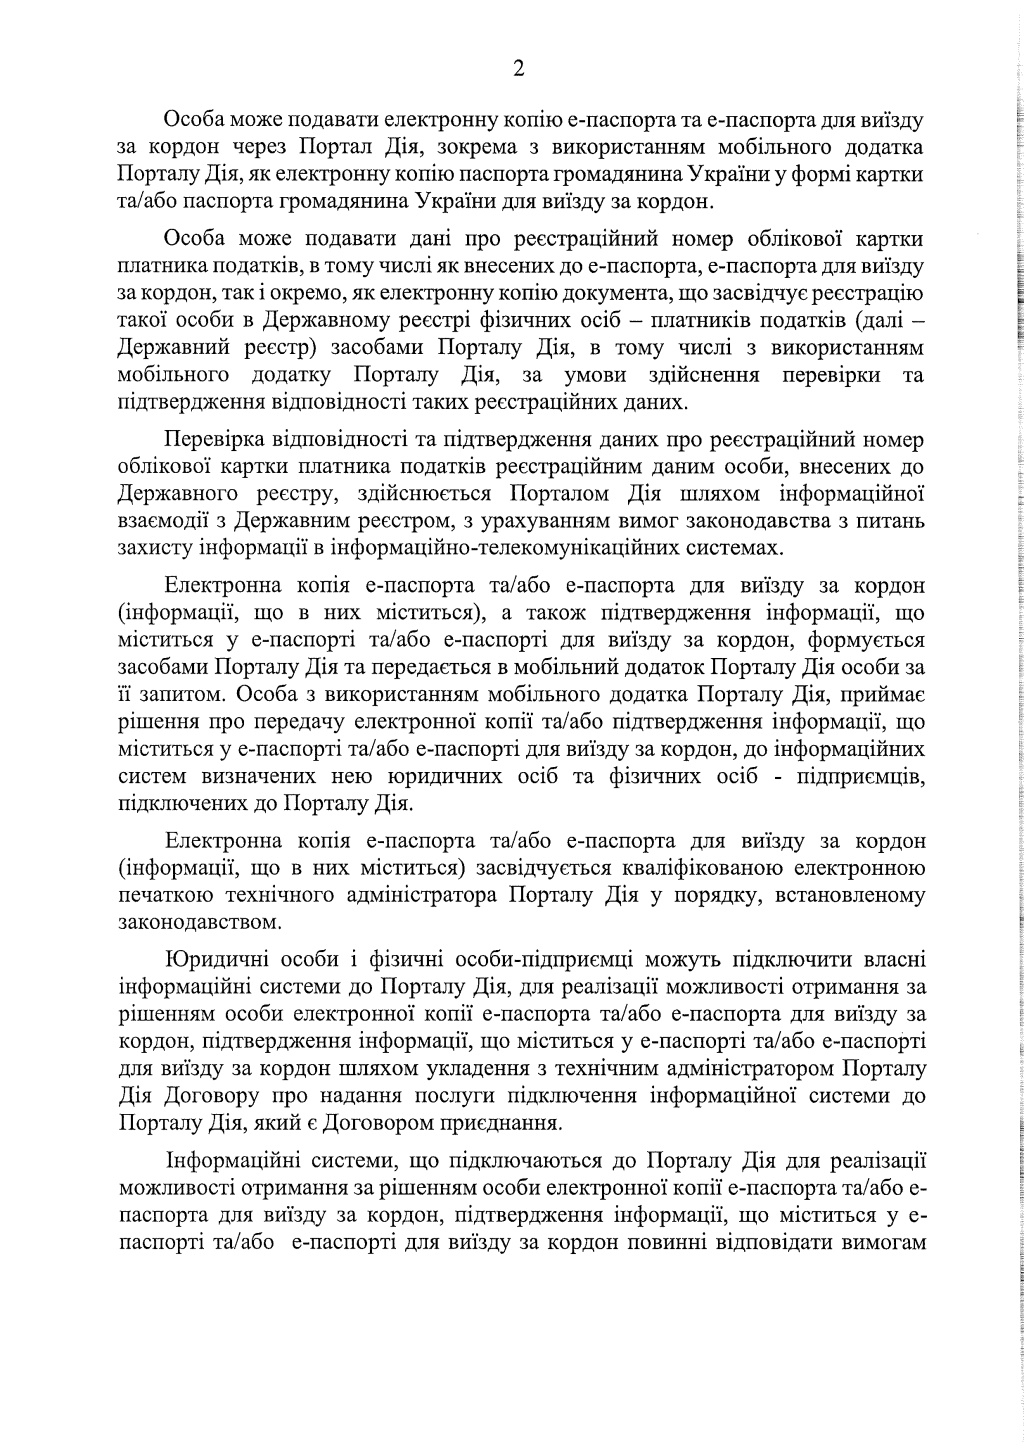 Кабінет міністрів України анонсував розширення можливостей е-паспорта через додаток ”Дія” - фото 4